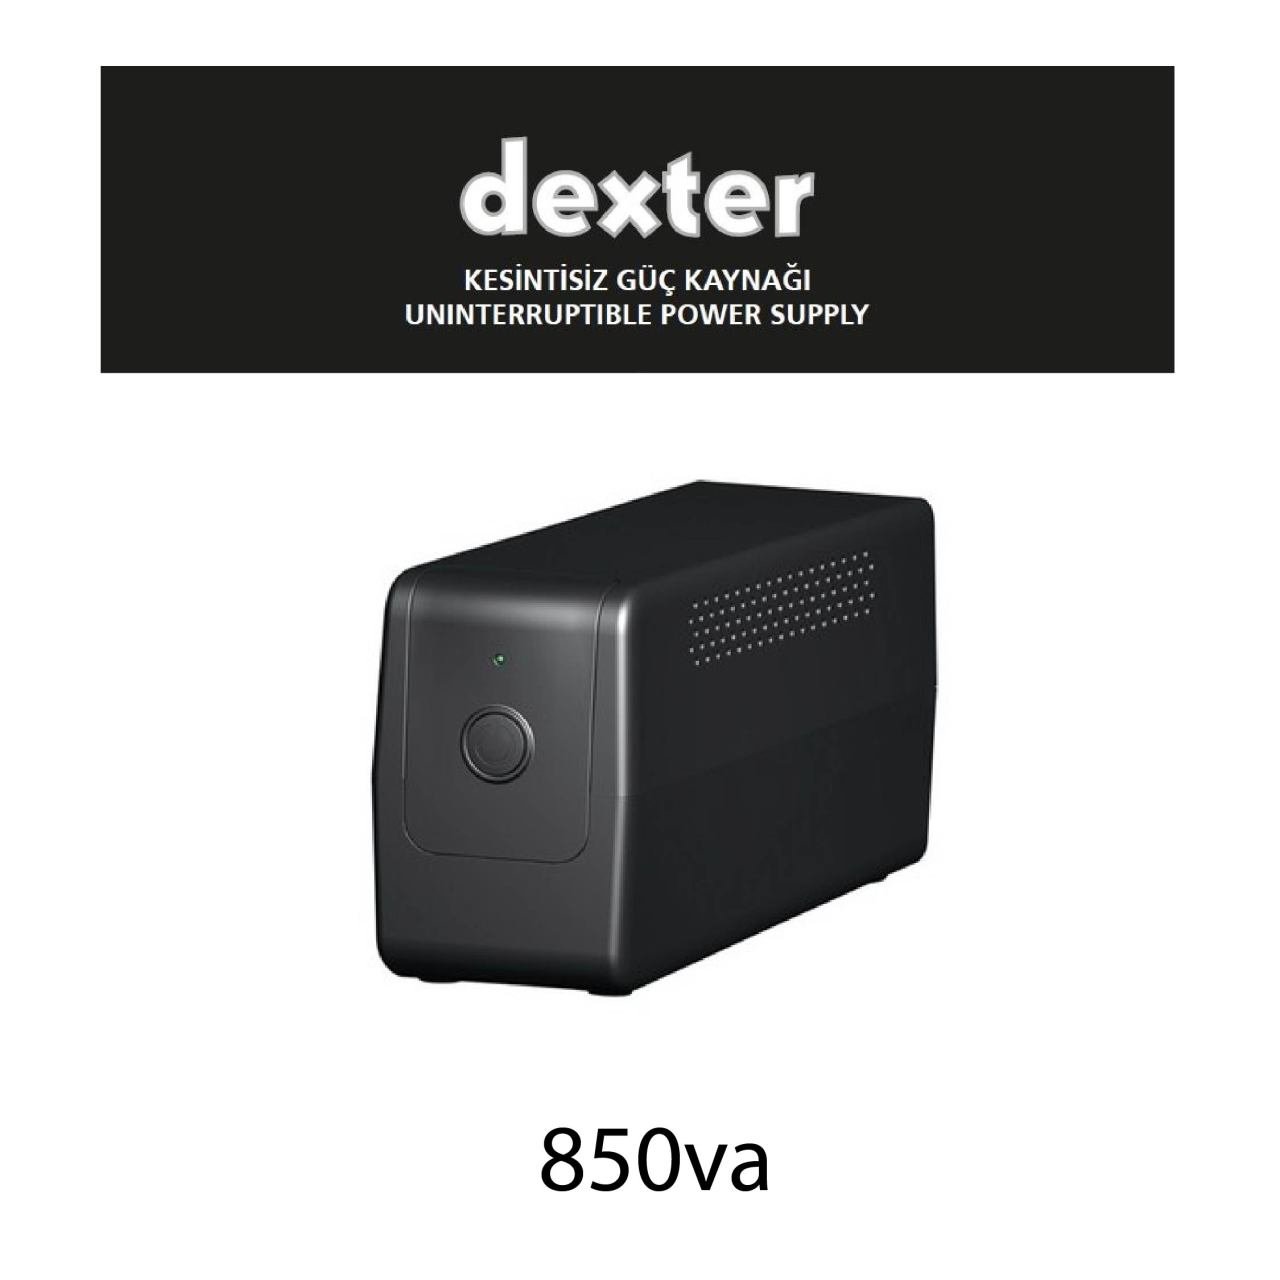 Dexter 850va Güç Kaynağı